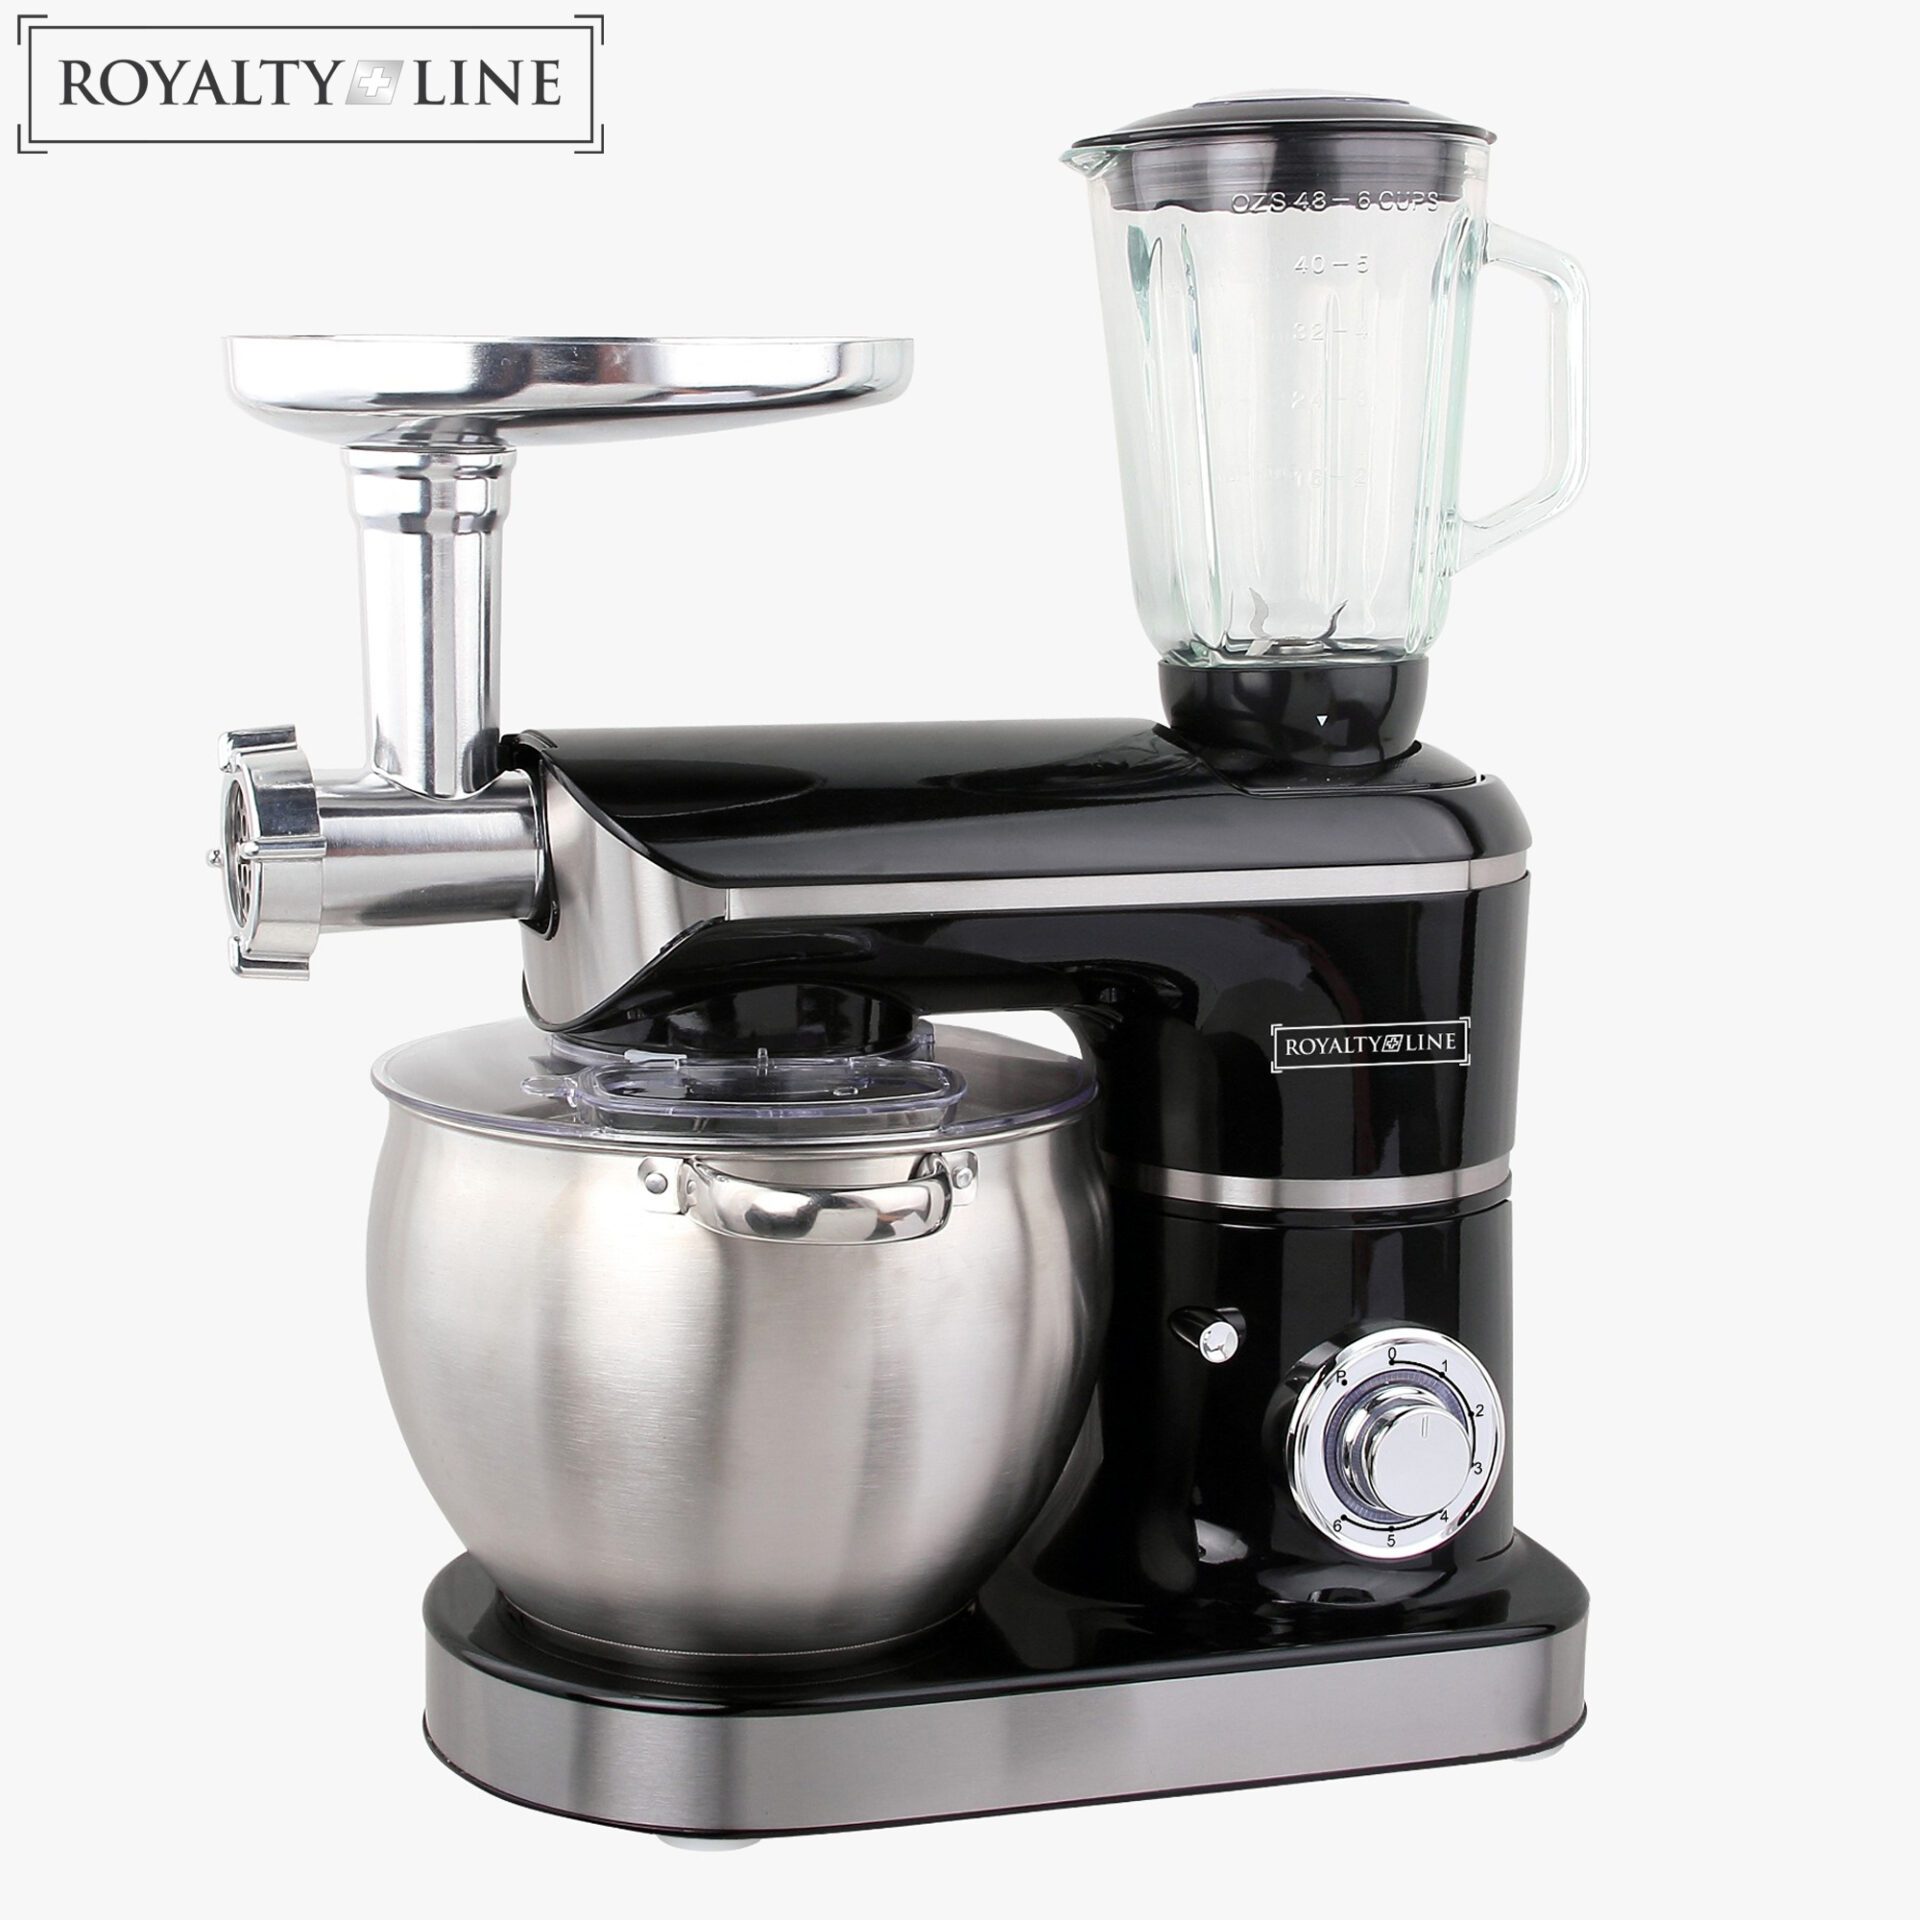 Royalty Line Kitchen Machine 3in1 2200W, 8.5L, Black